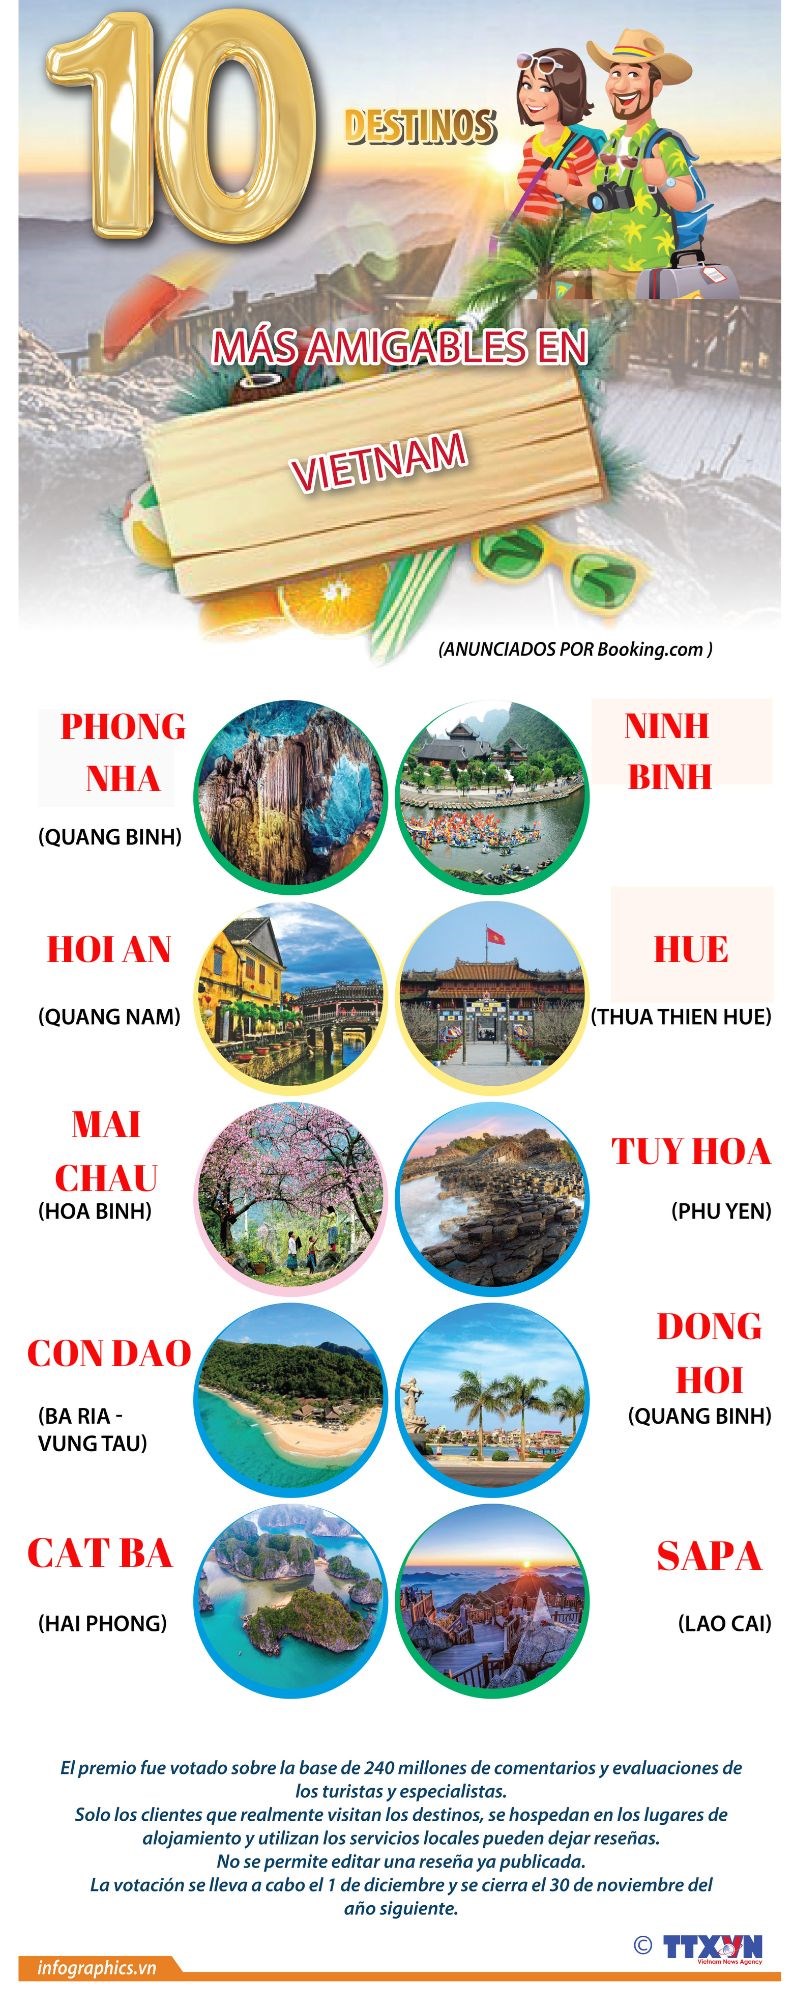 10 destinos mas amigables en Vietnam hinh anh 1